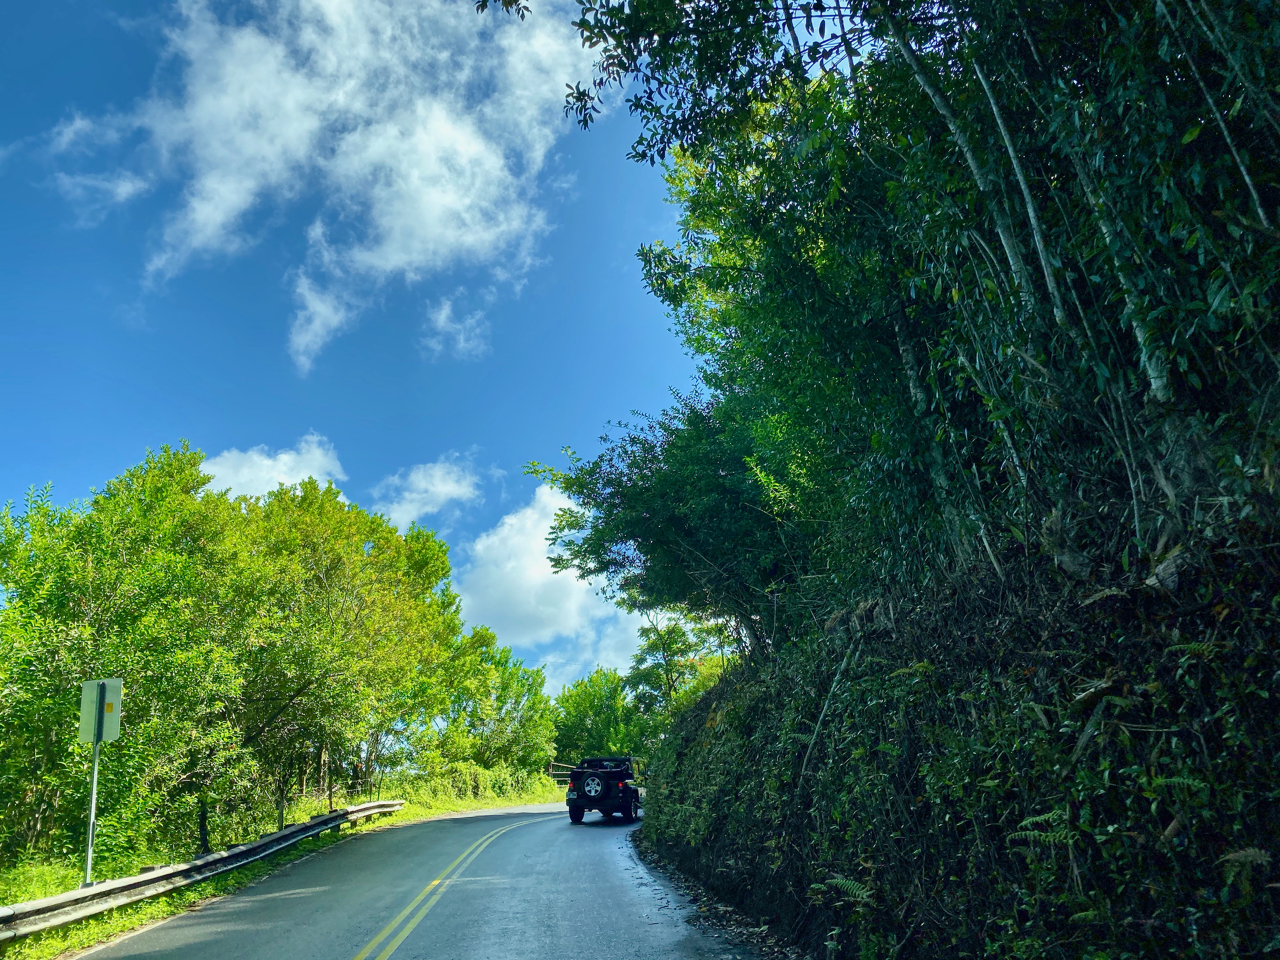 Jeep on the Road to Hana - Maui